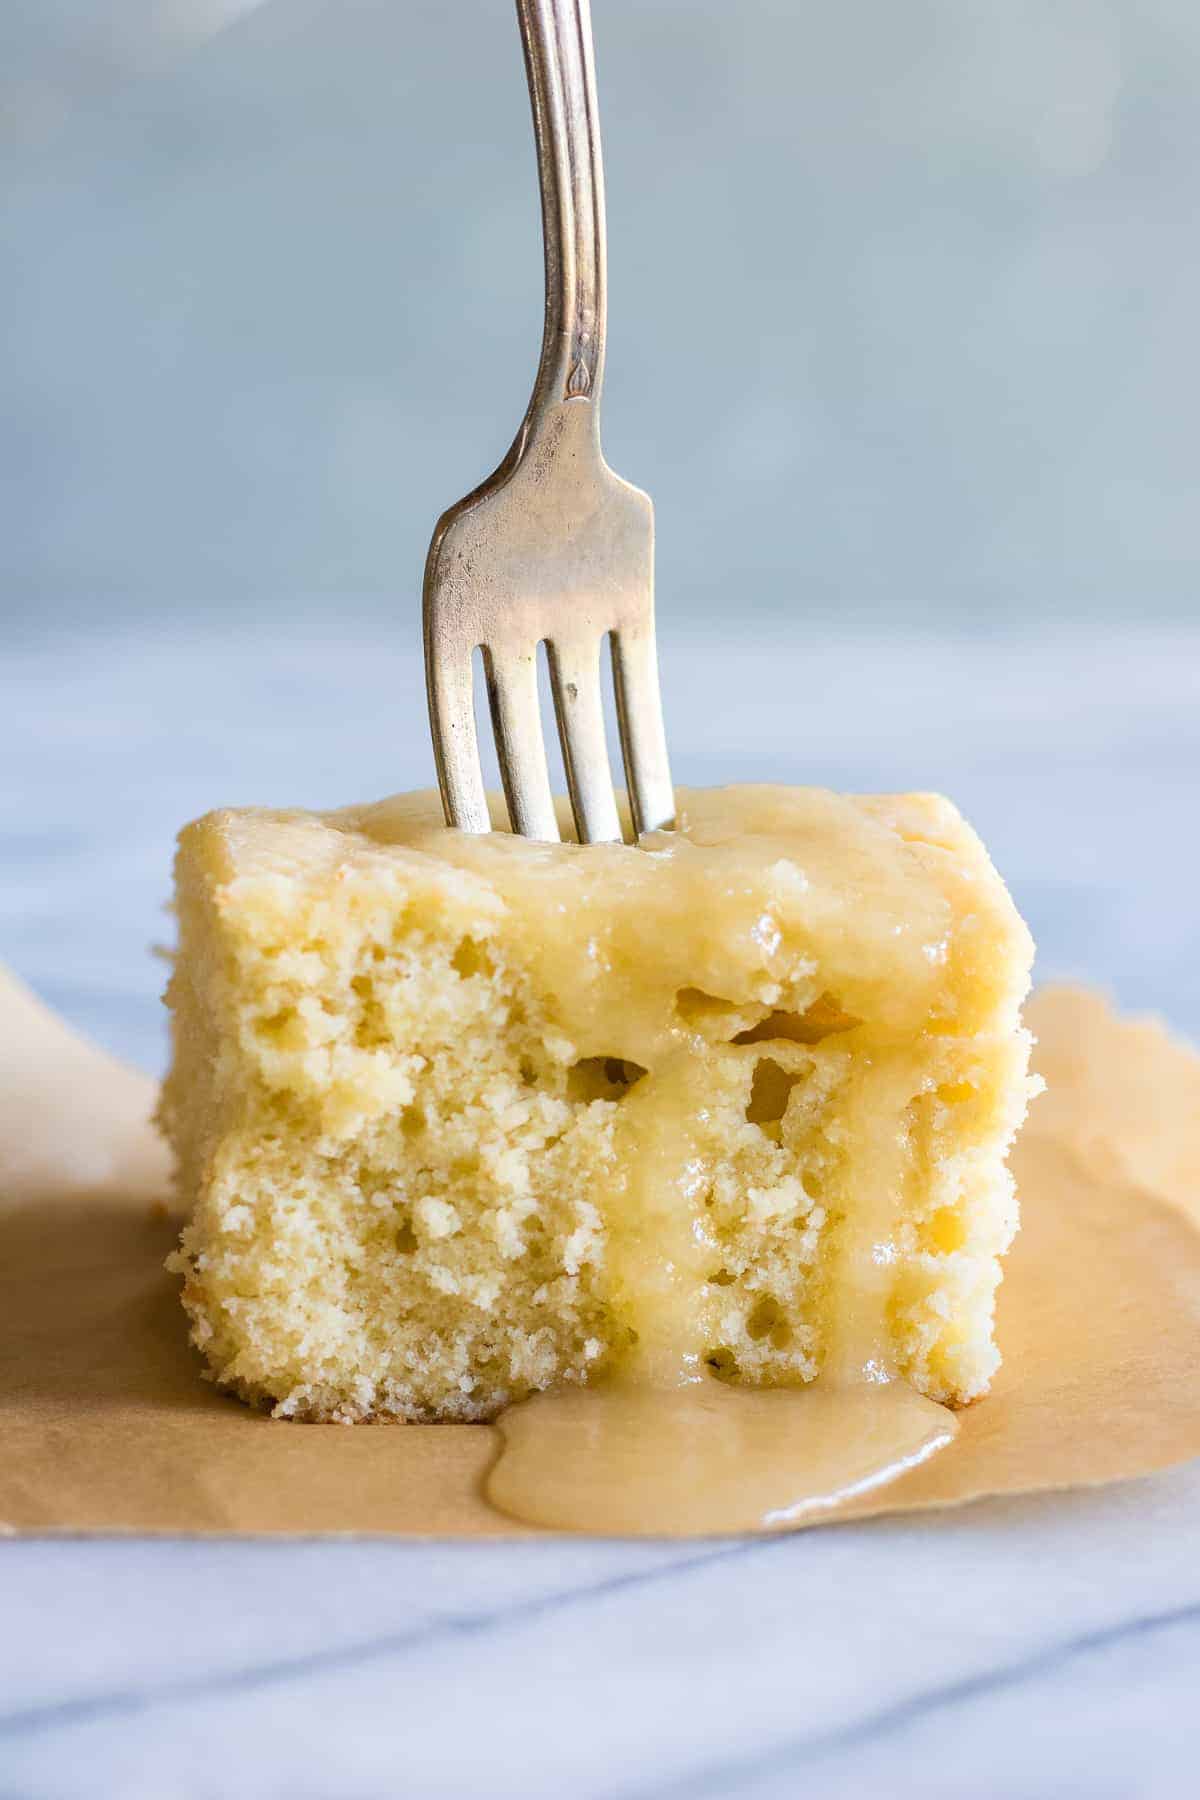 Feuille de gâteau au rhum et au beurre. Ce gâteau jaune maison, léger et moelleux, contient du rhum et est nappé d'une sauce au rhum et au beurre. Même si ce gâteau est de taille réduite, il n'en a pas moins toute sa saveur !